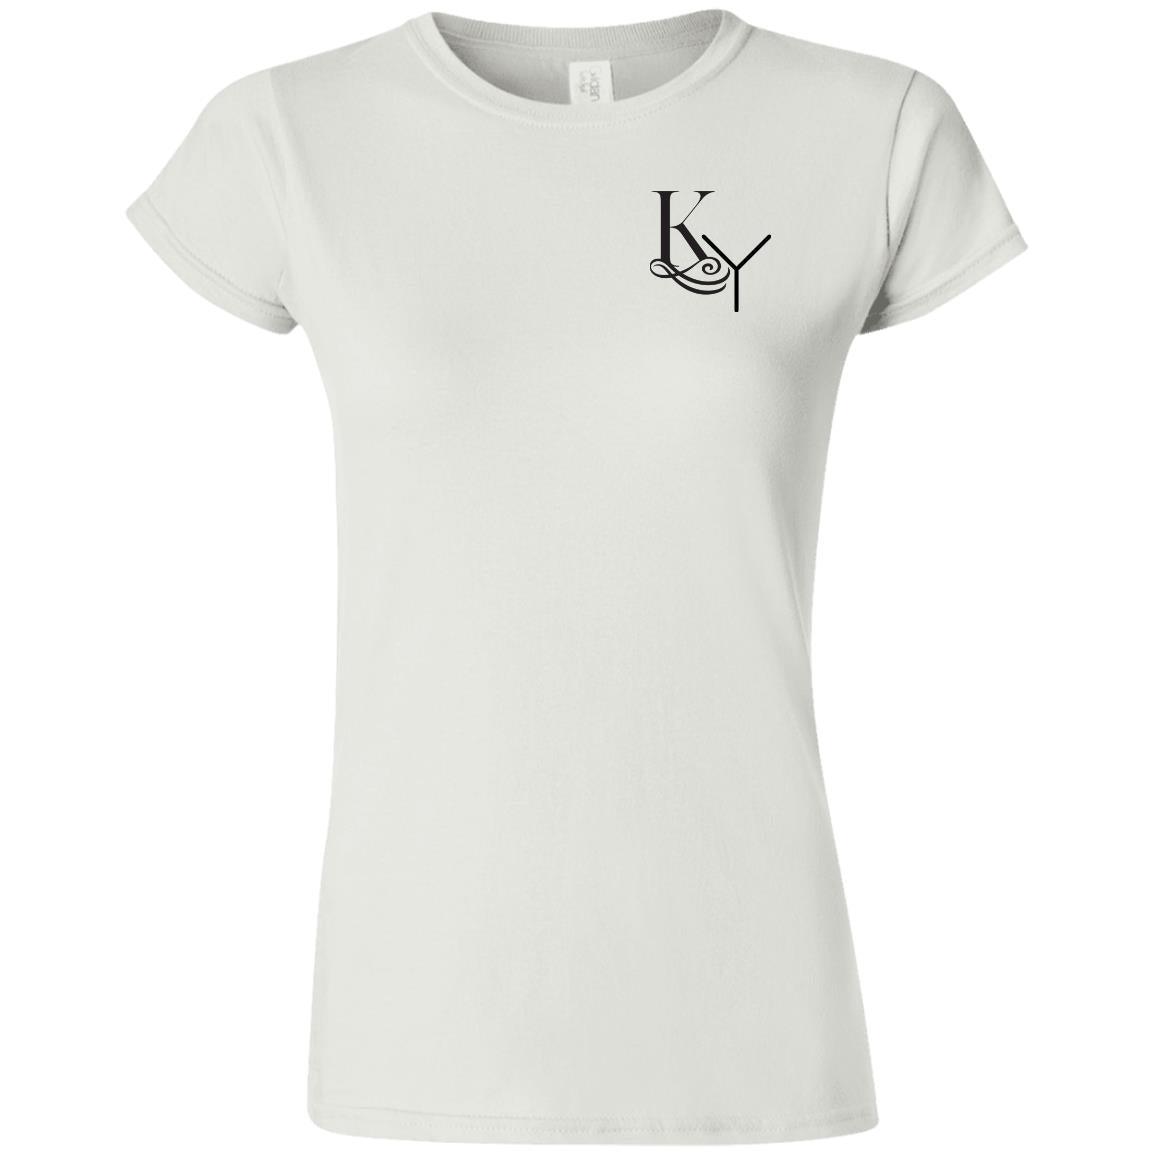 Softstyle Ladies' T-Shirt - KaymoA 